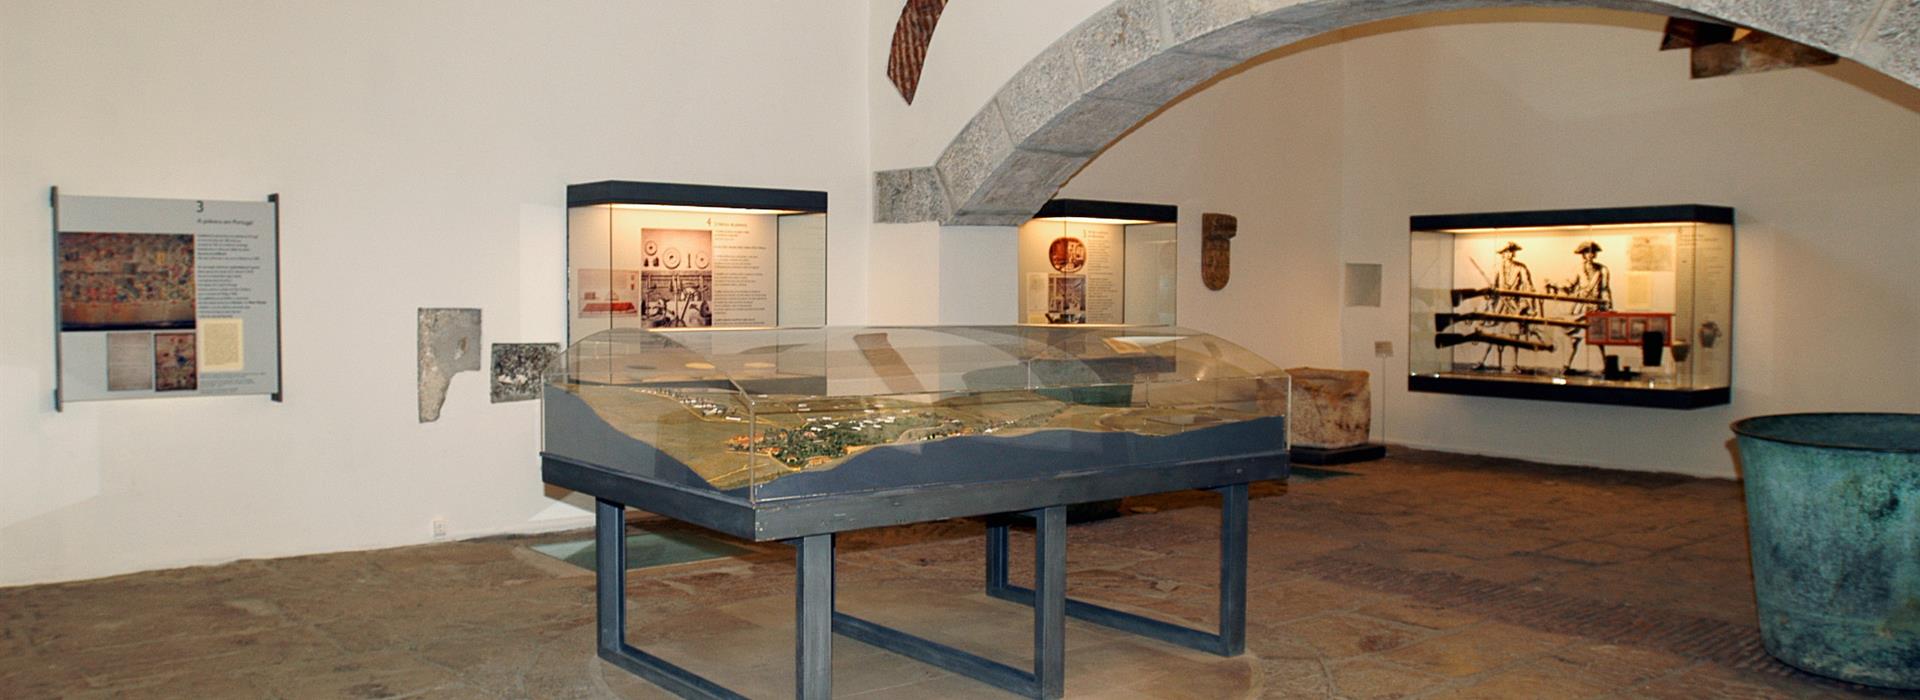 Museu da P�lvora Negra em Oeiras